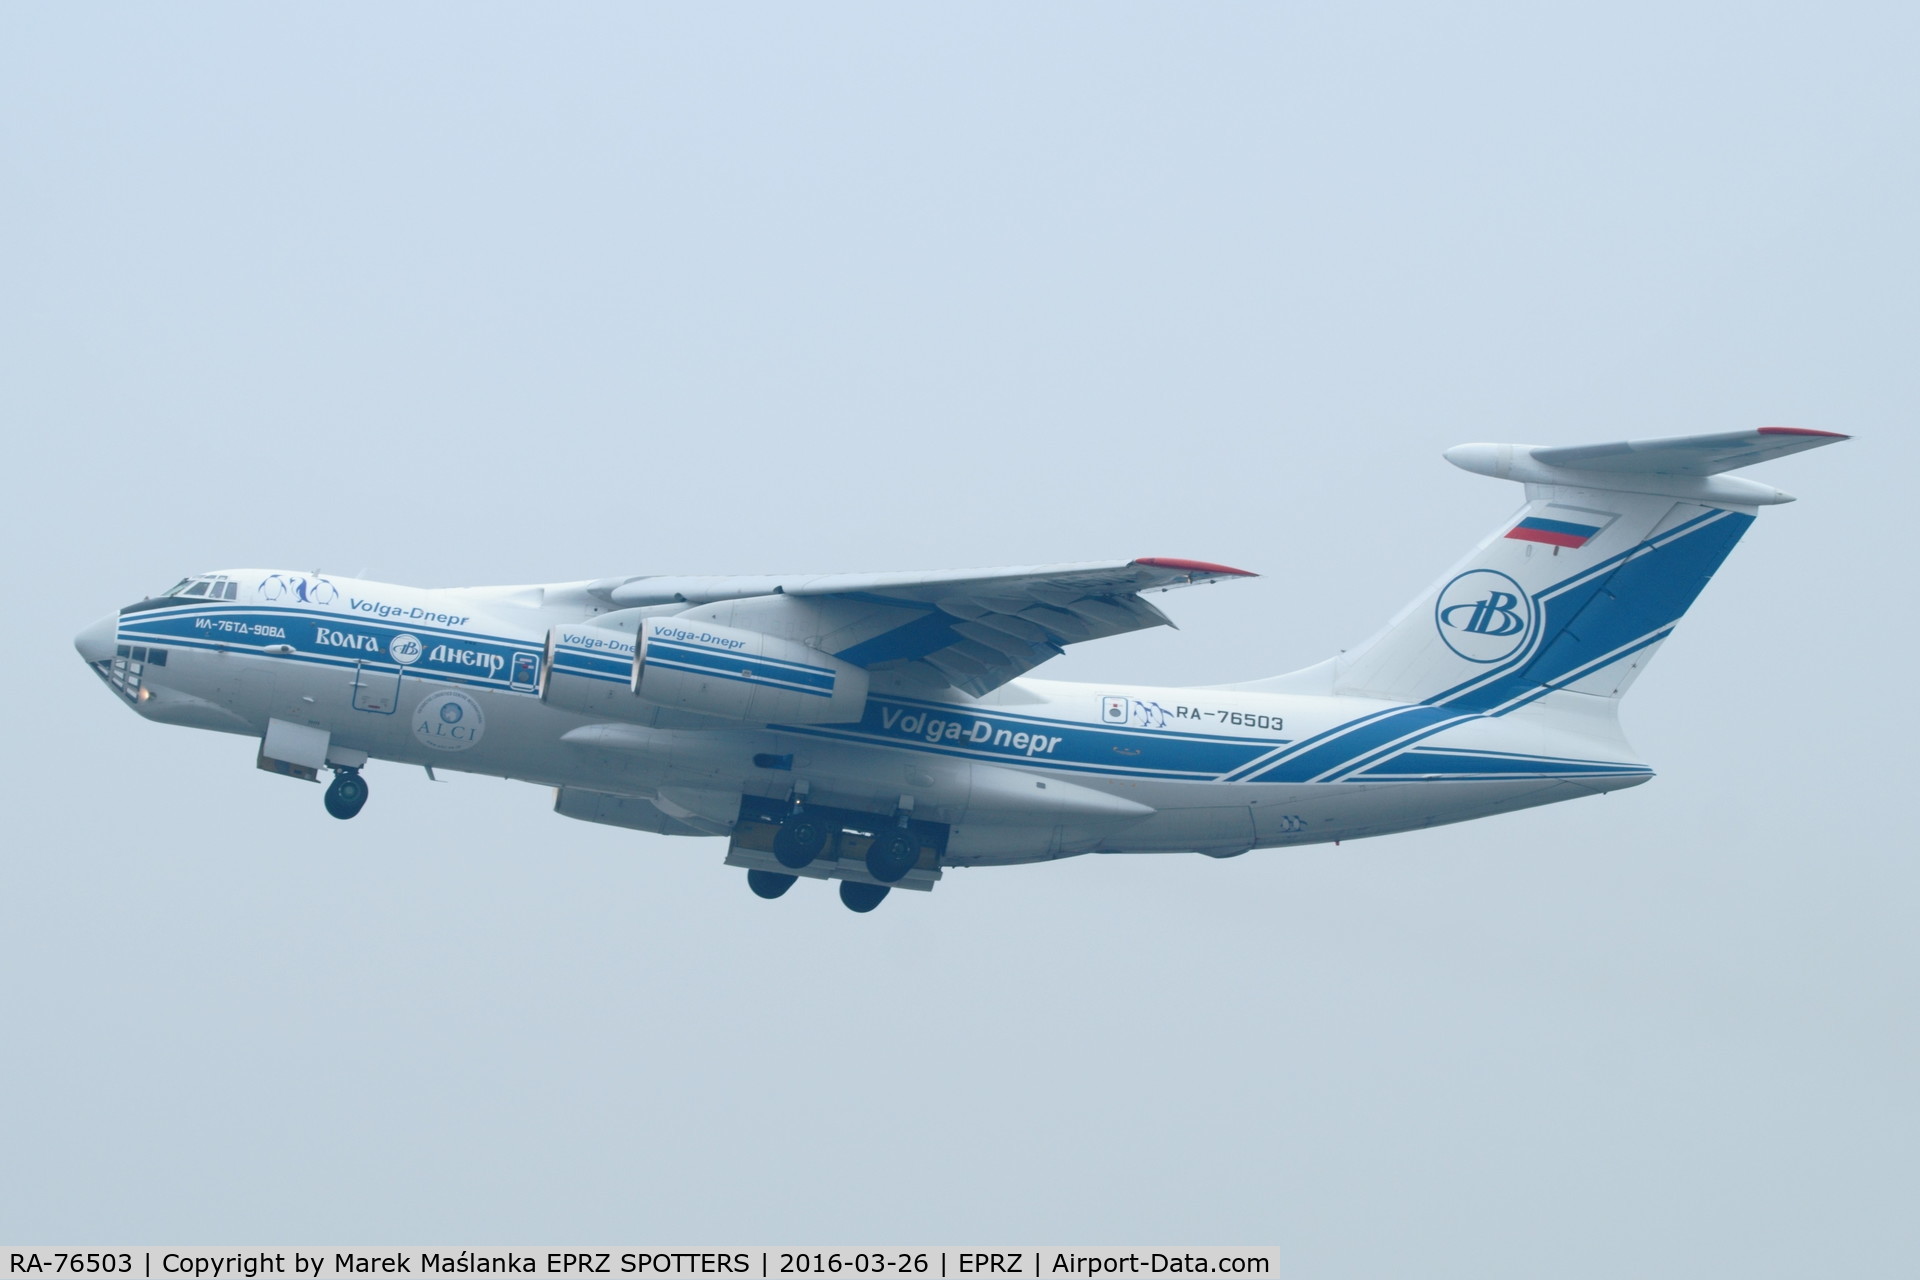 RA-76503, 2011 Ilyushin IL-76TD-90VD C/N 2093422748, RA-76503 - Ilyushin Il-76TD-90VD - Volga-Dnepr Airlines